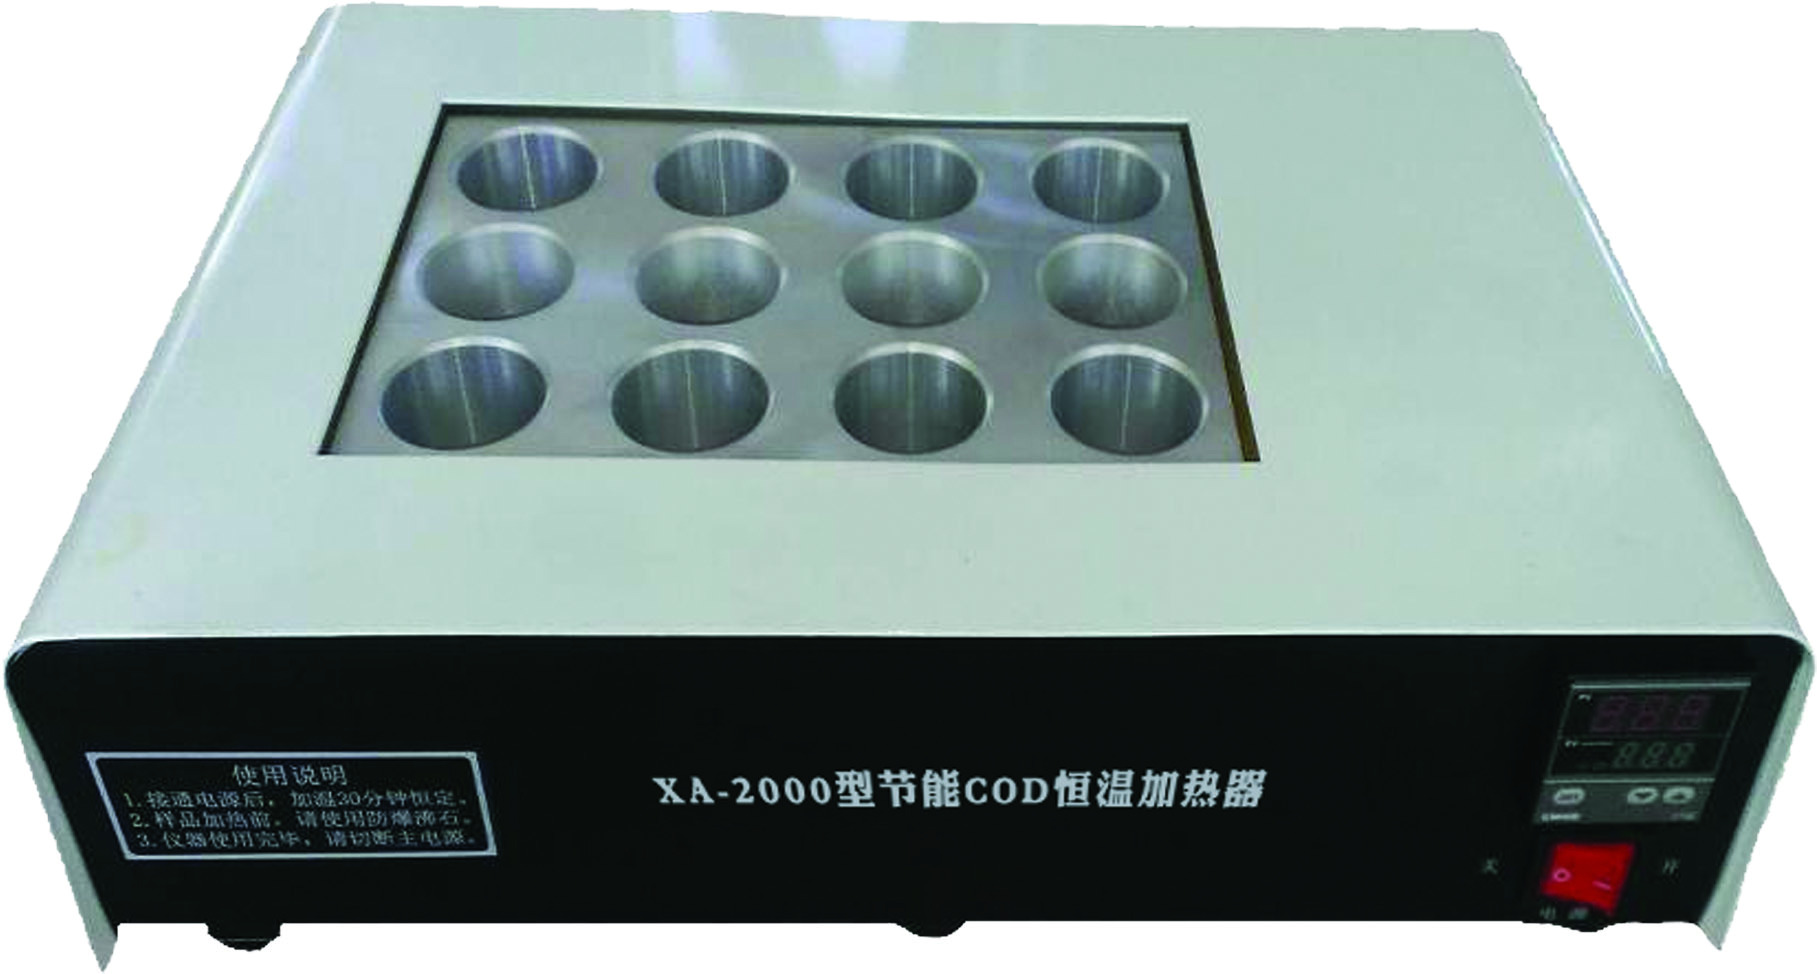 XA-2000T型智能COD恒温加热器